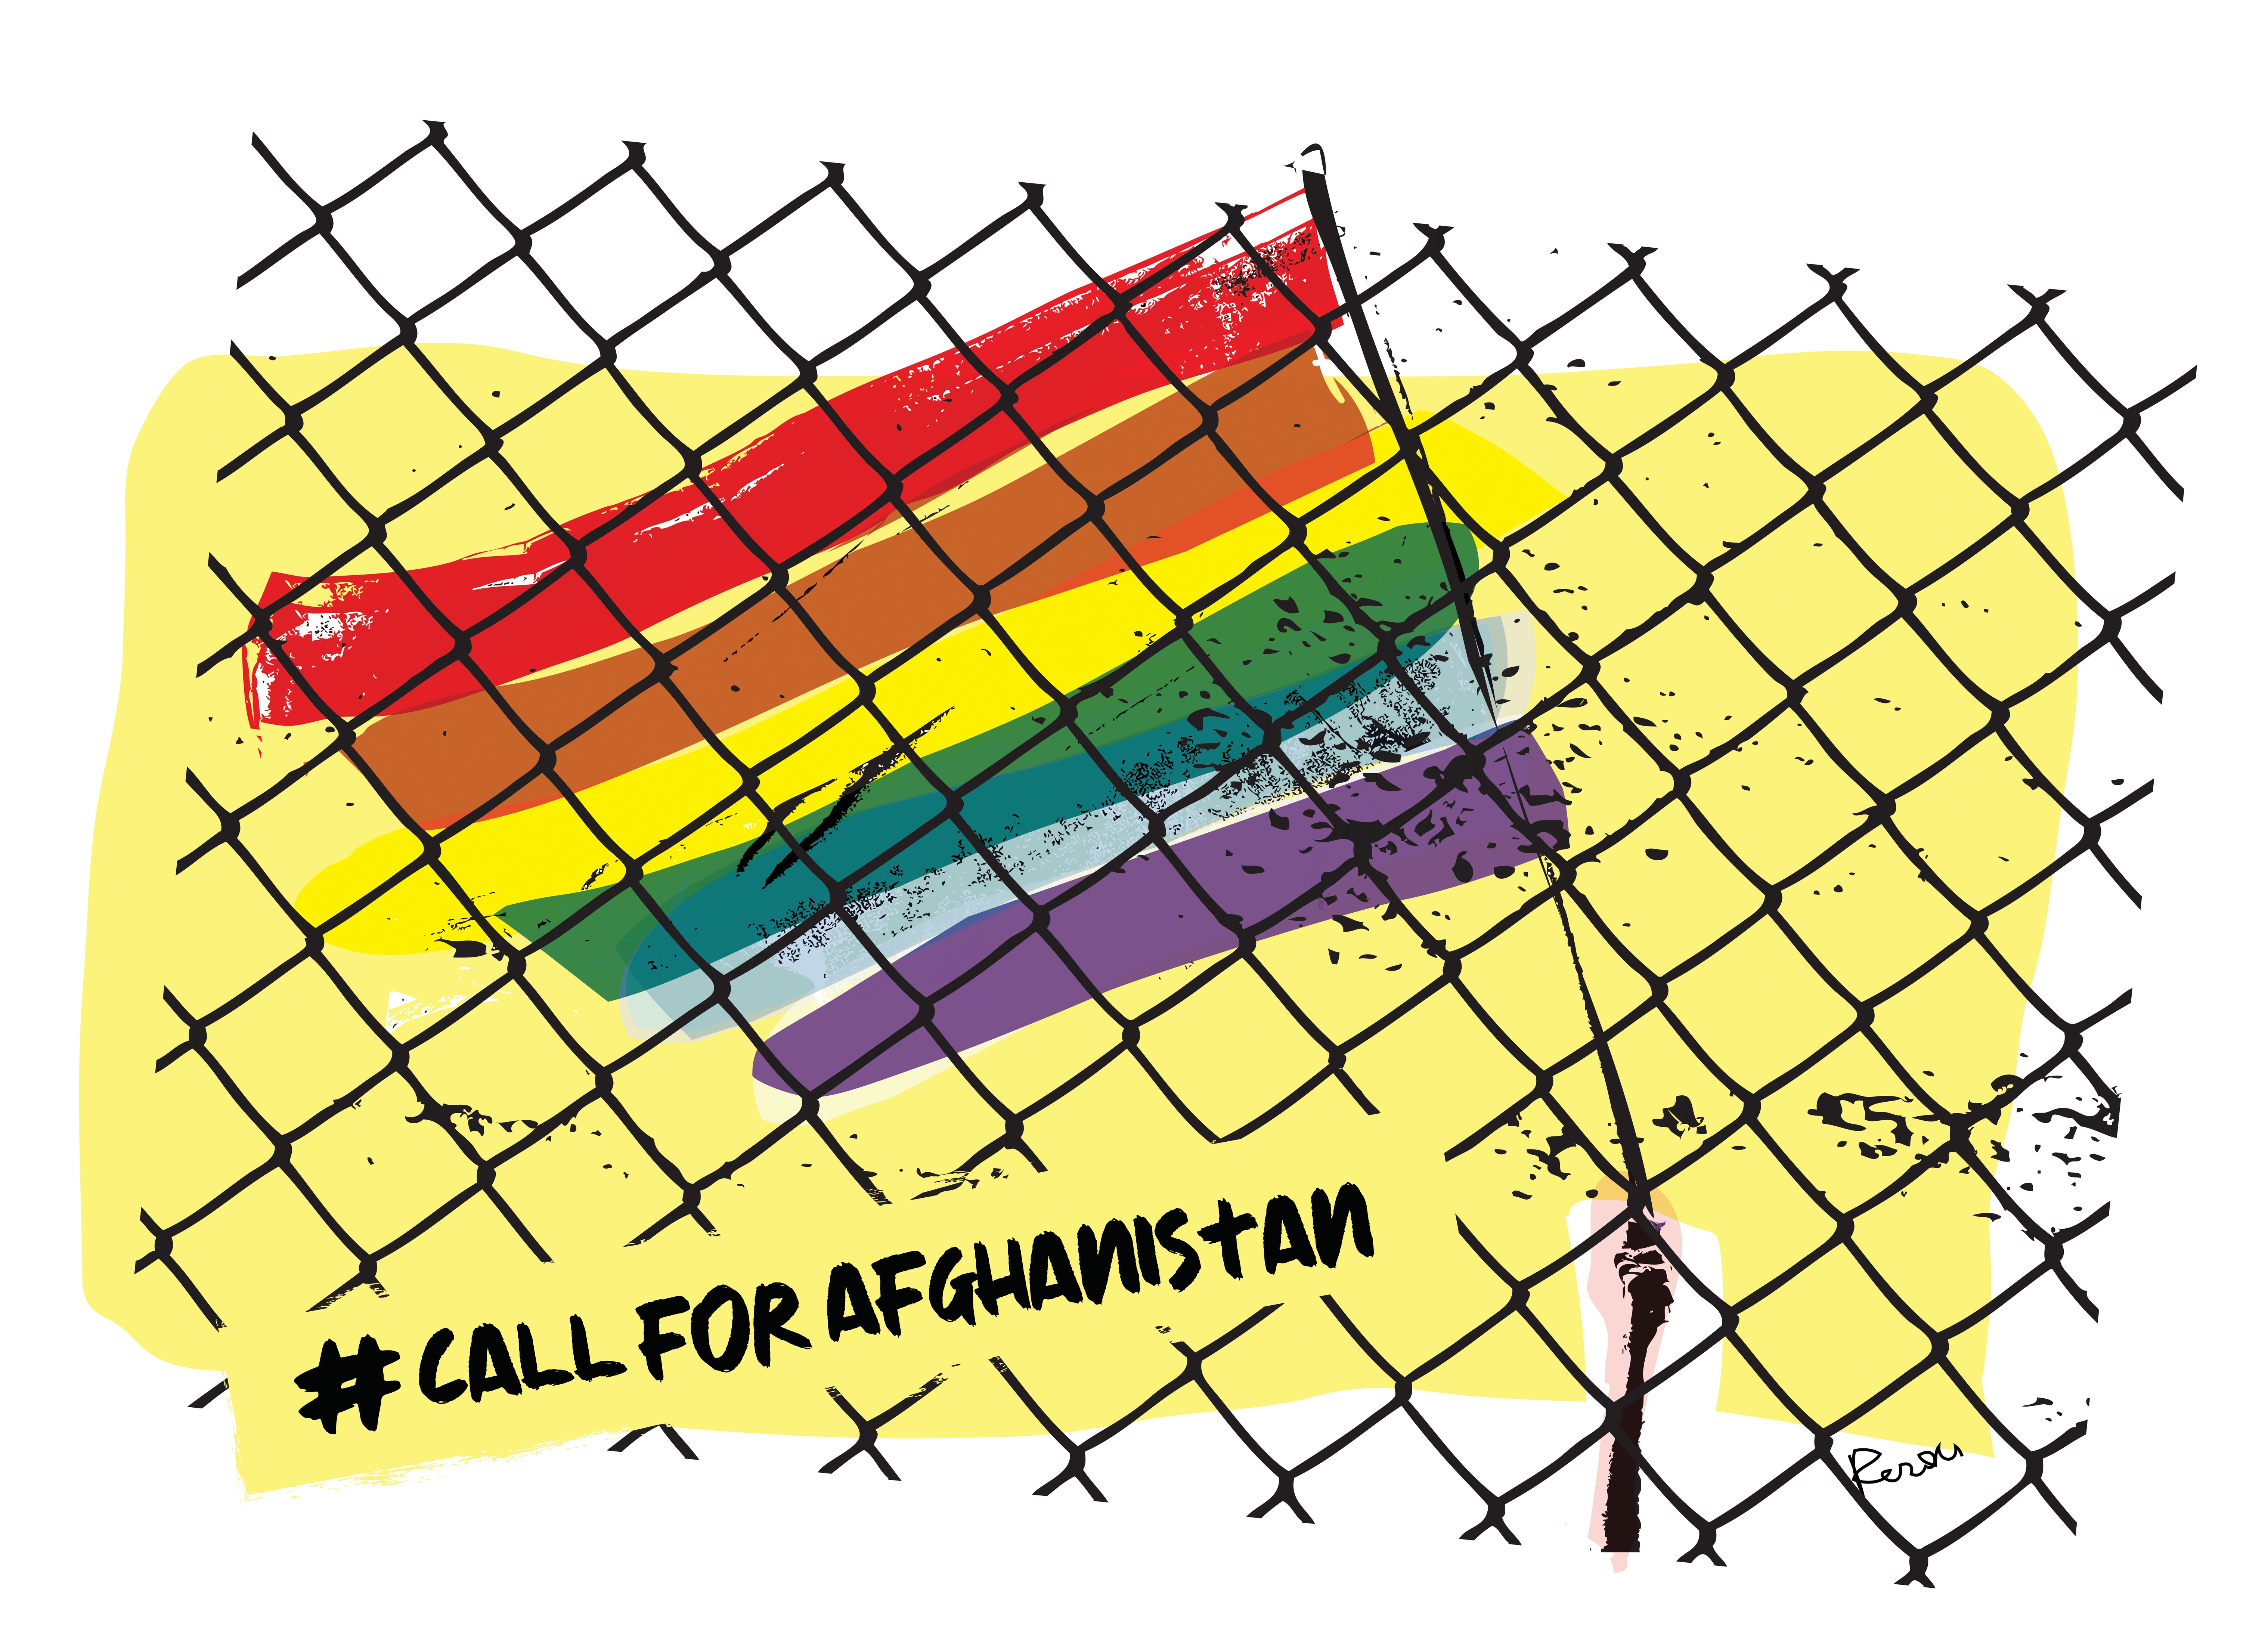 Una bandiera Arcobaleno, simbolo della comunità LGBTQI+, dietro una gabbia in attesa di volare verso la libertà